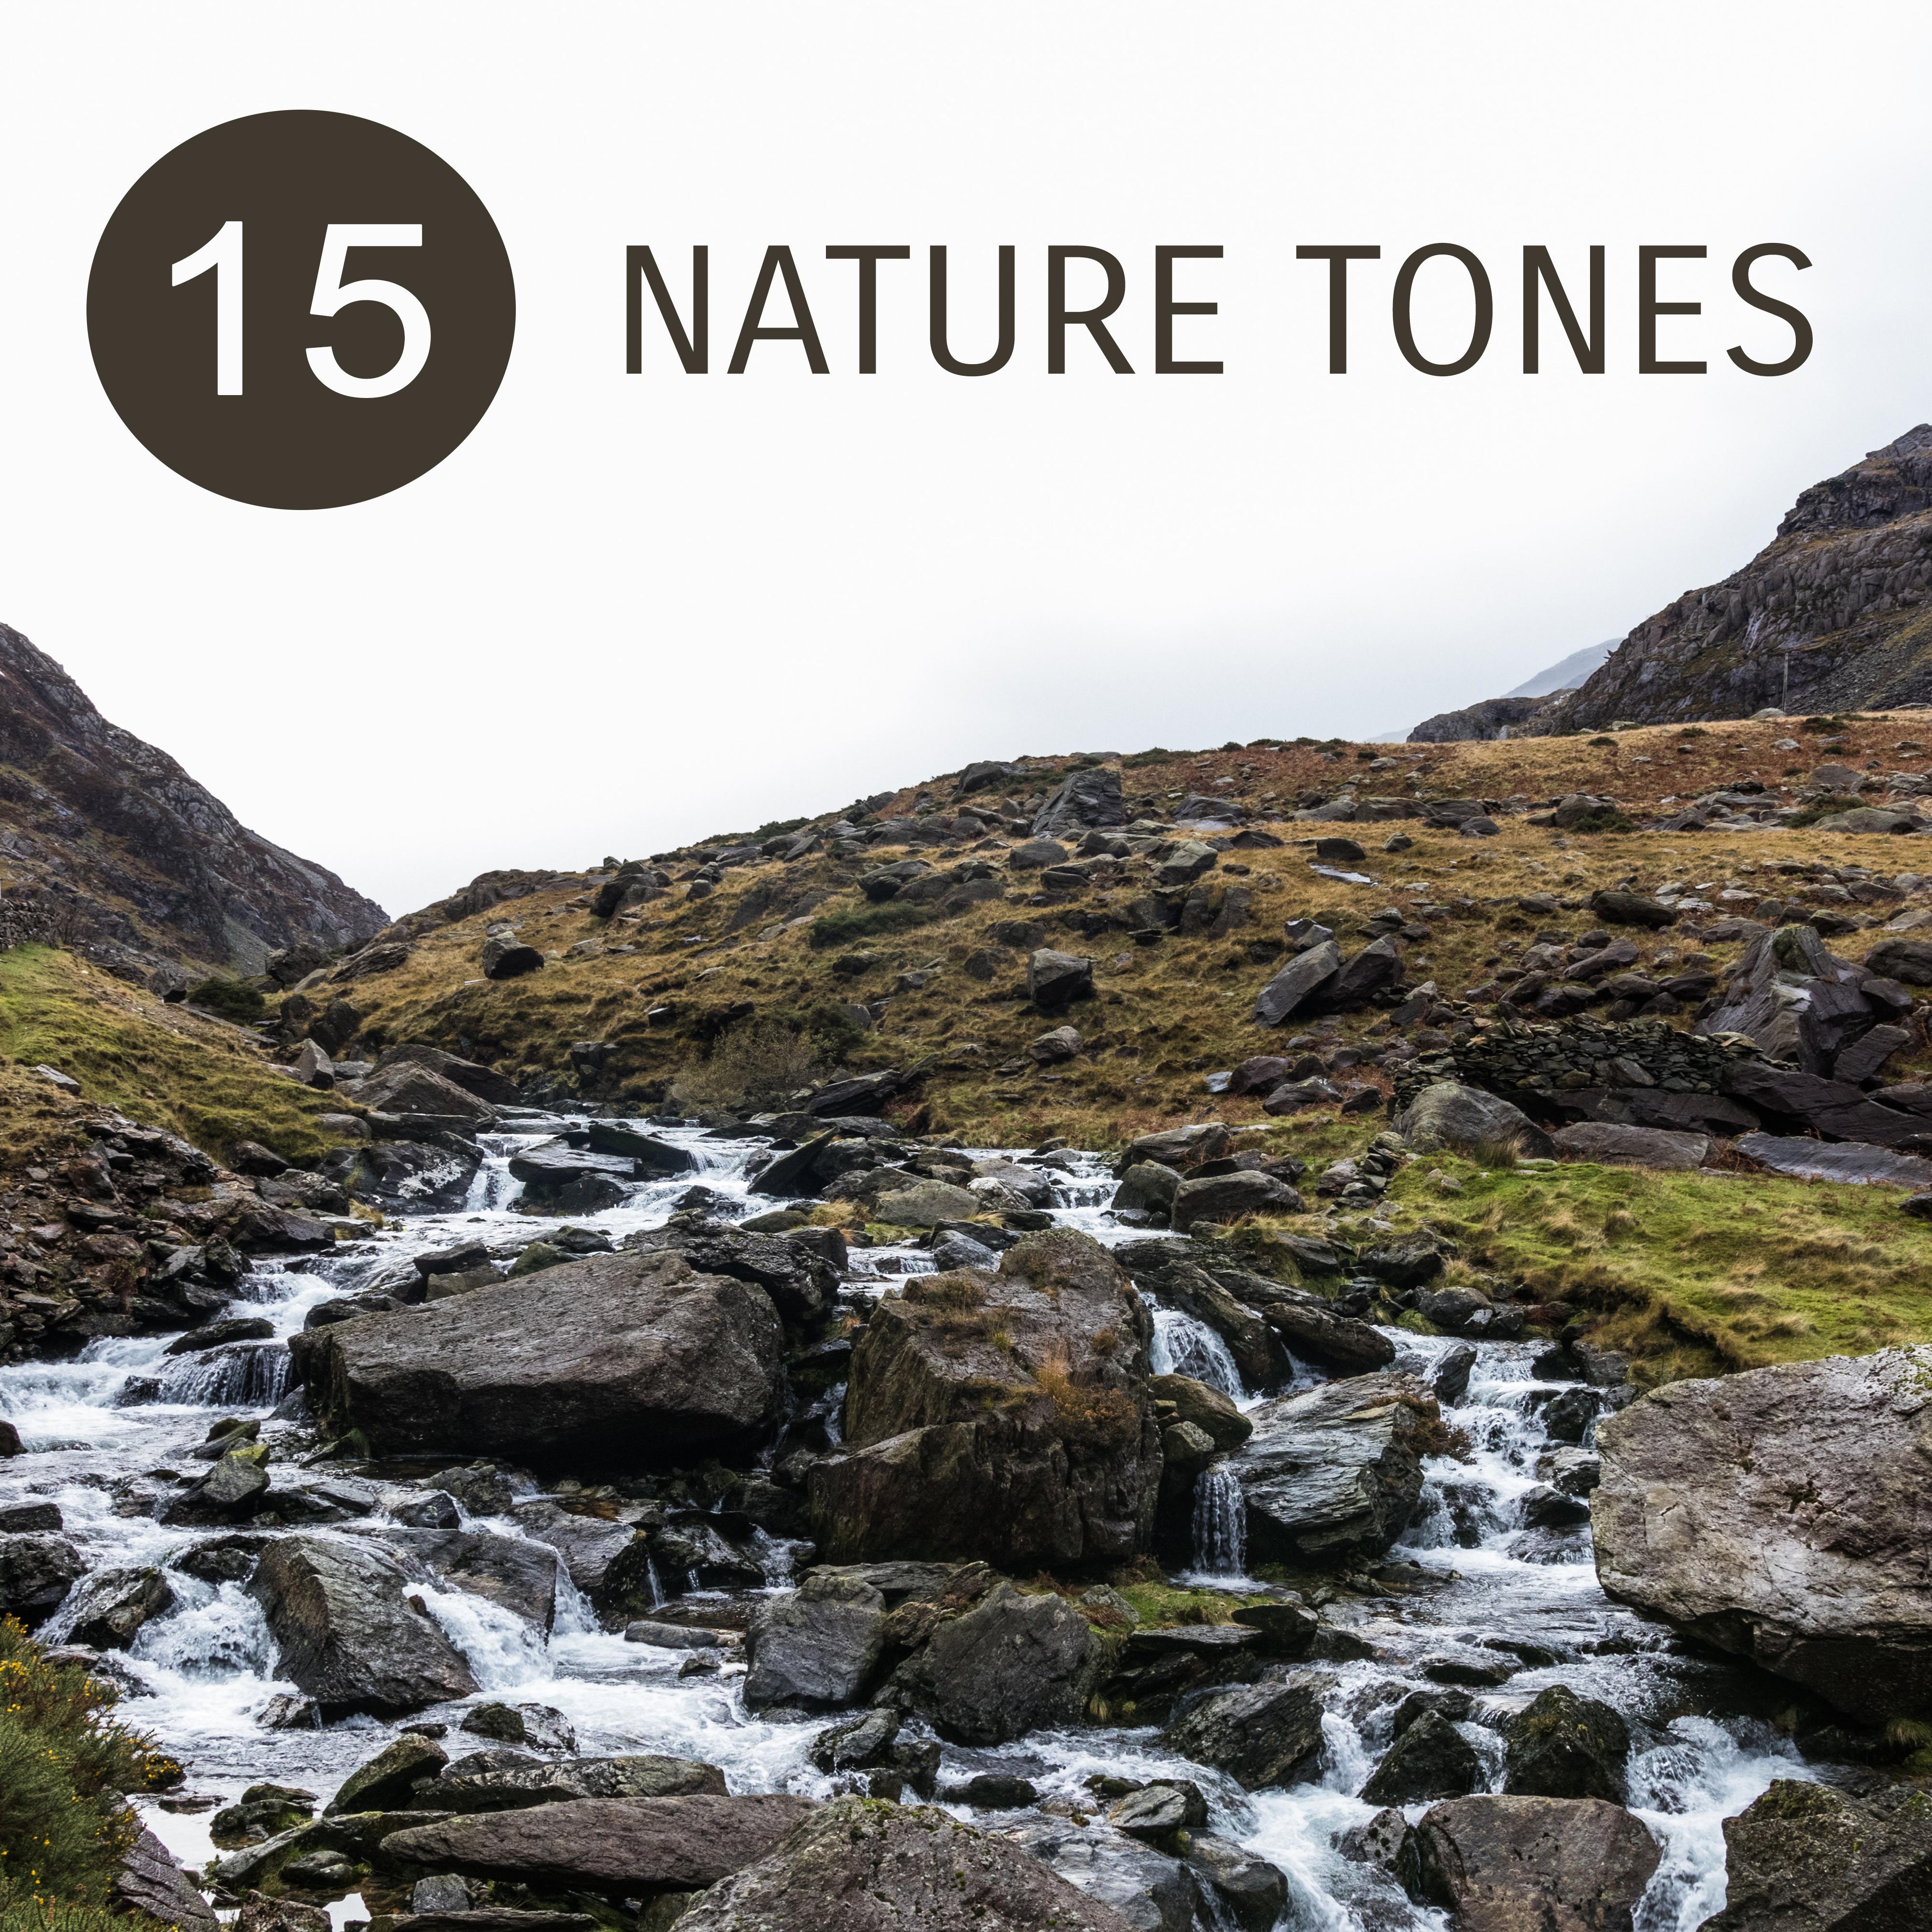 15 Nature Tones